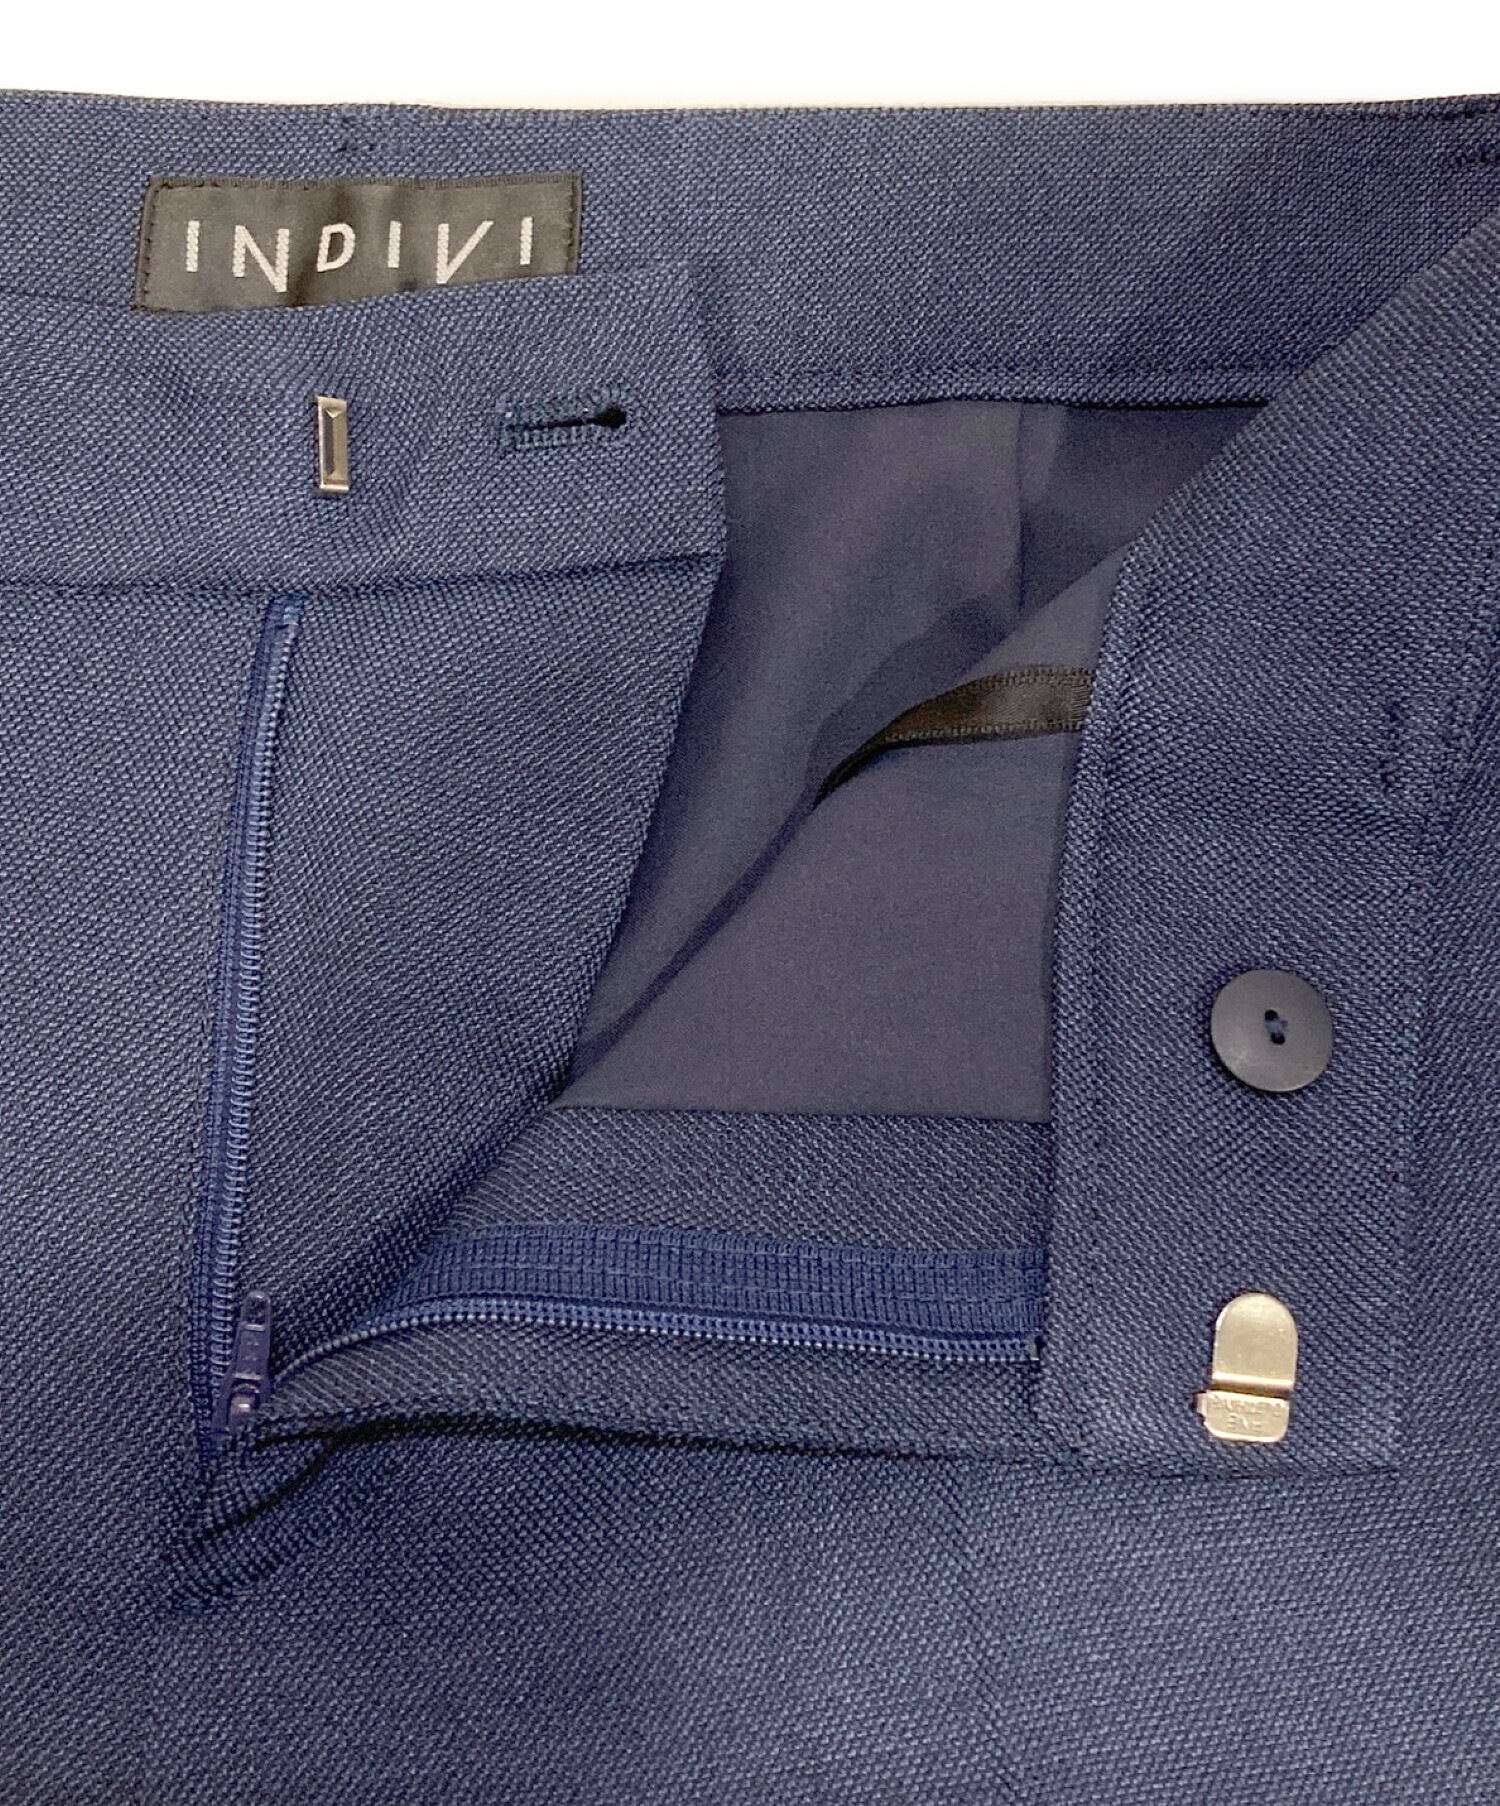 INDIVI (インディヴィ) ツイルノーカラーセットアップスーツ ネイビー サイズ:M